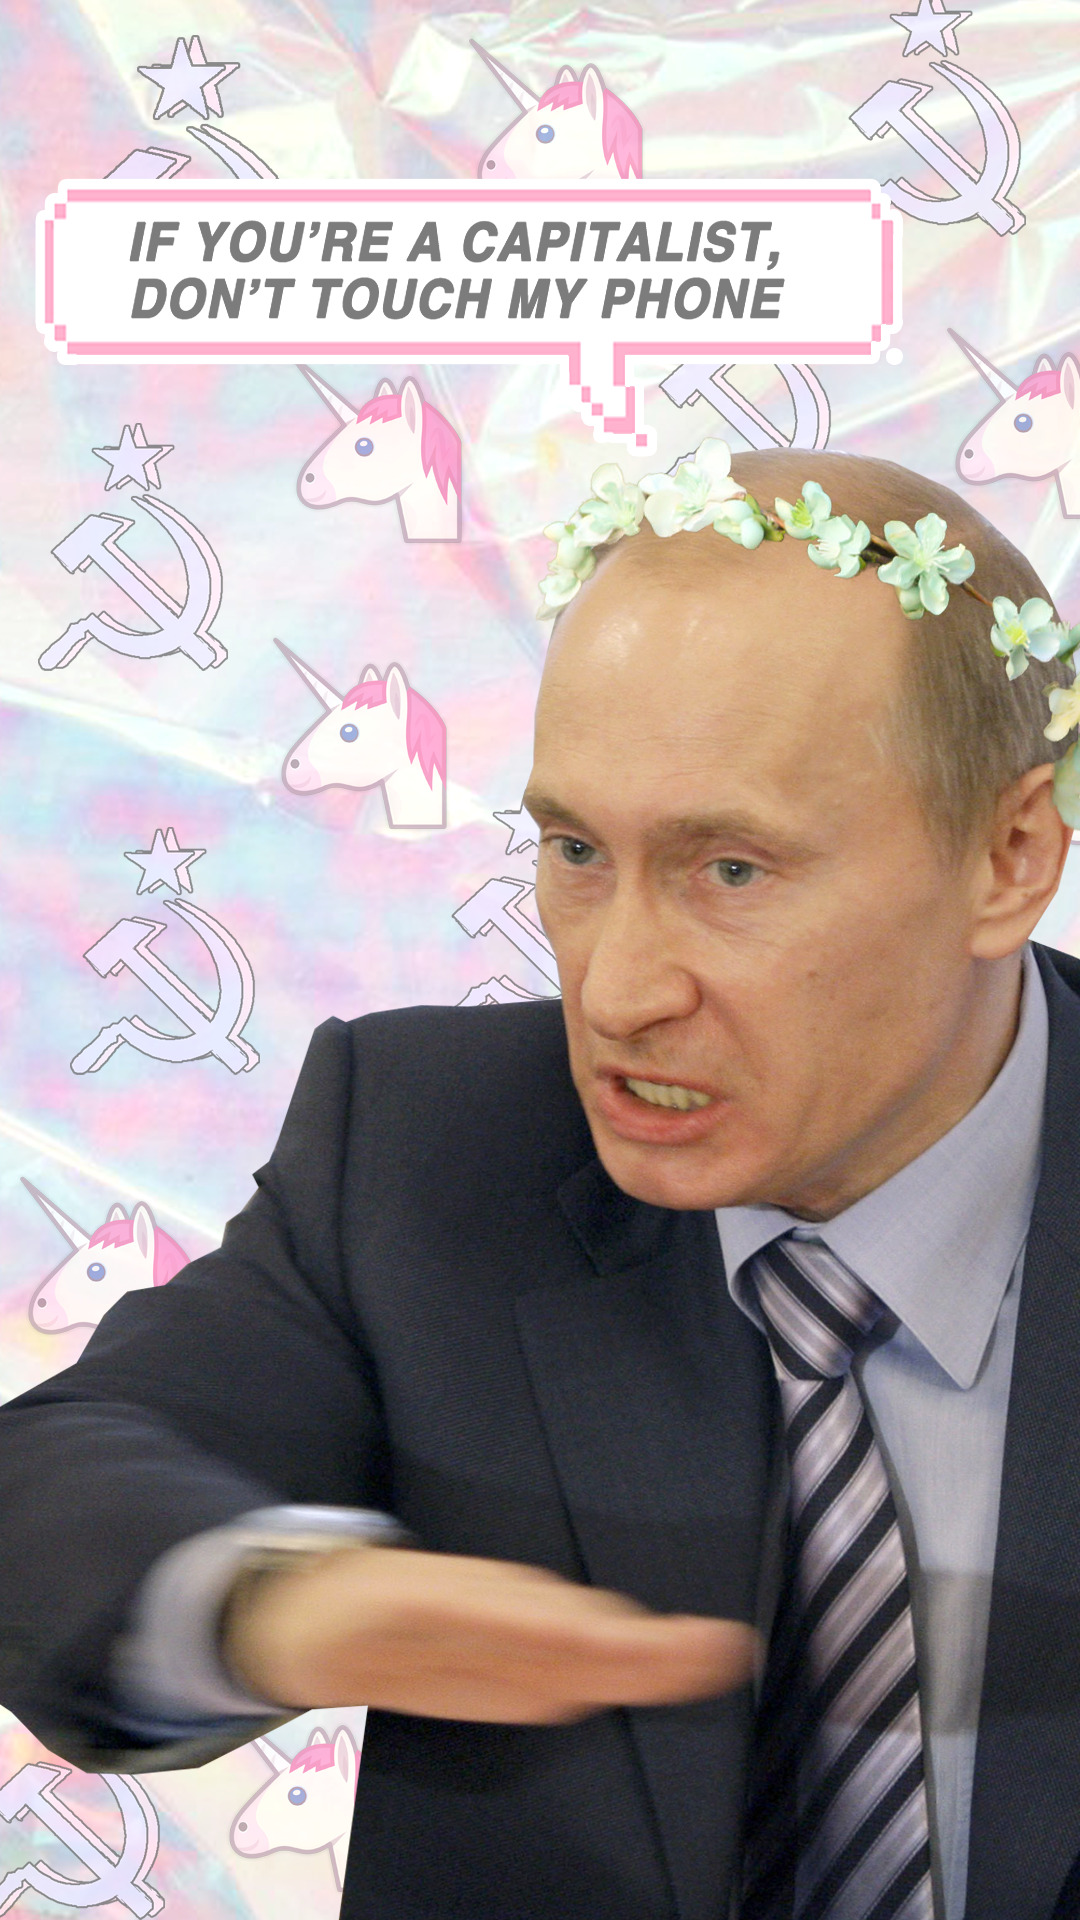 Фото Путина На Обои Телефона